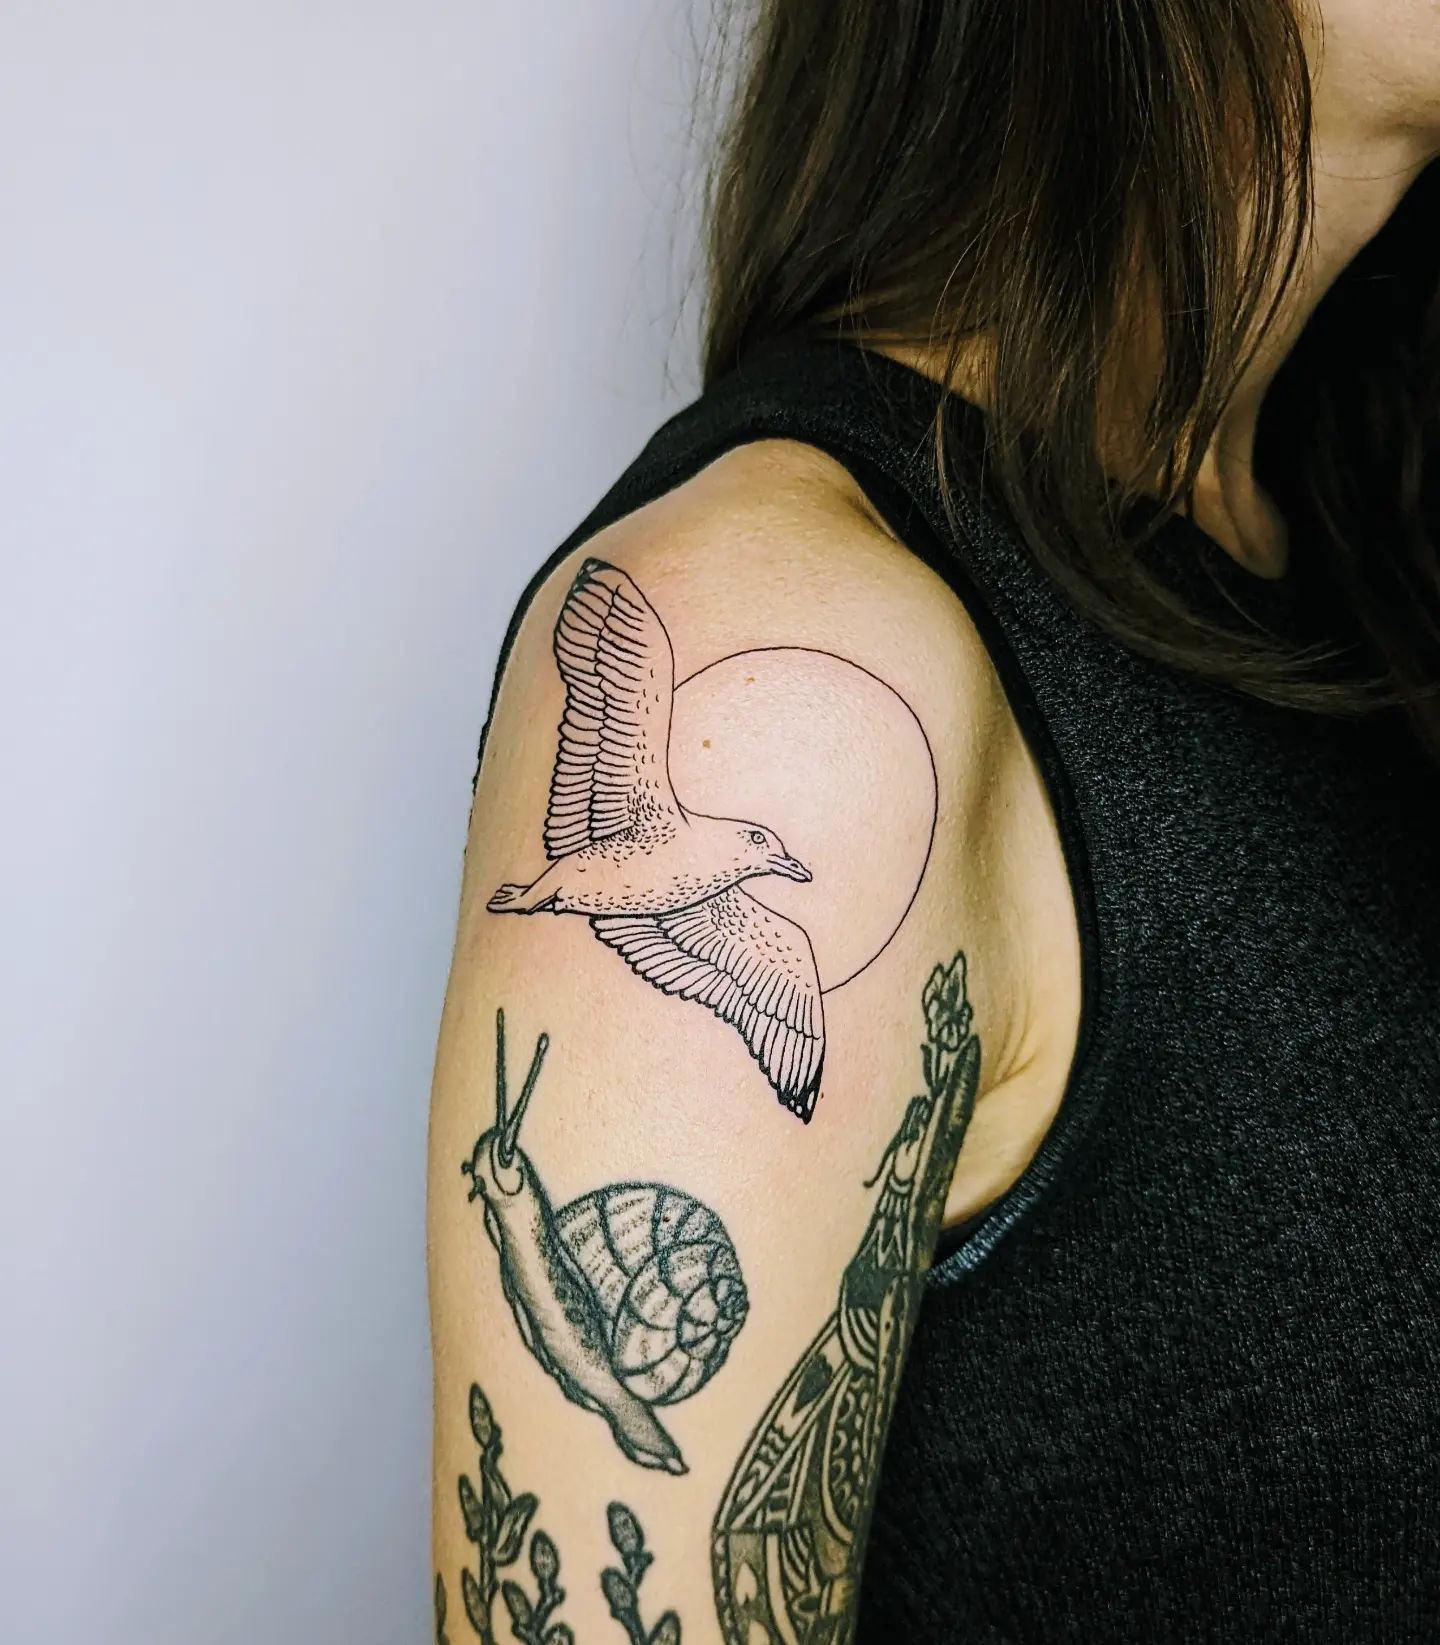 Tatuaje de remiendo de gaviota y caracol.